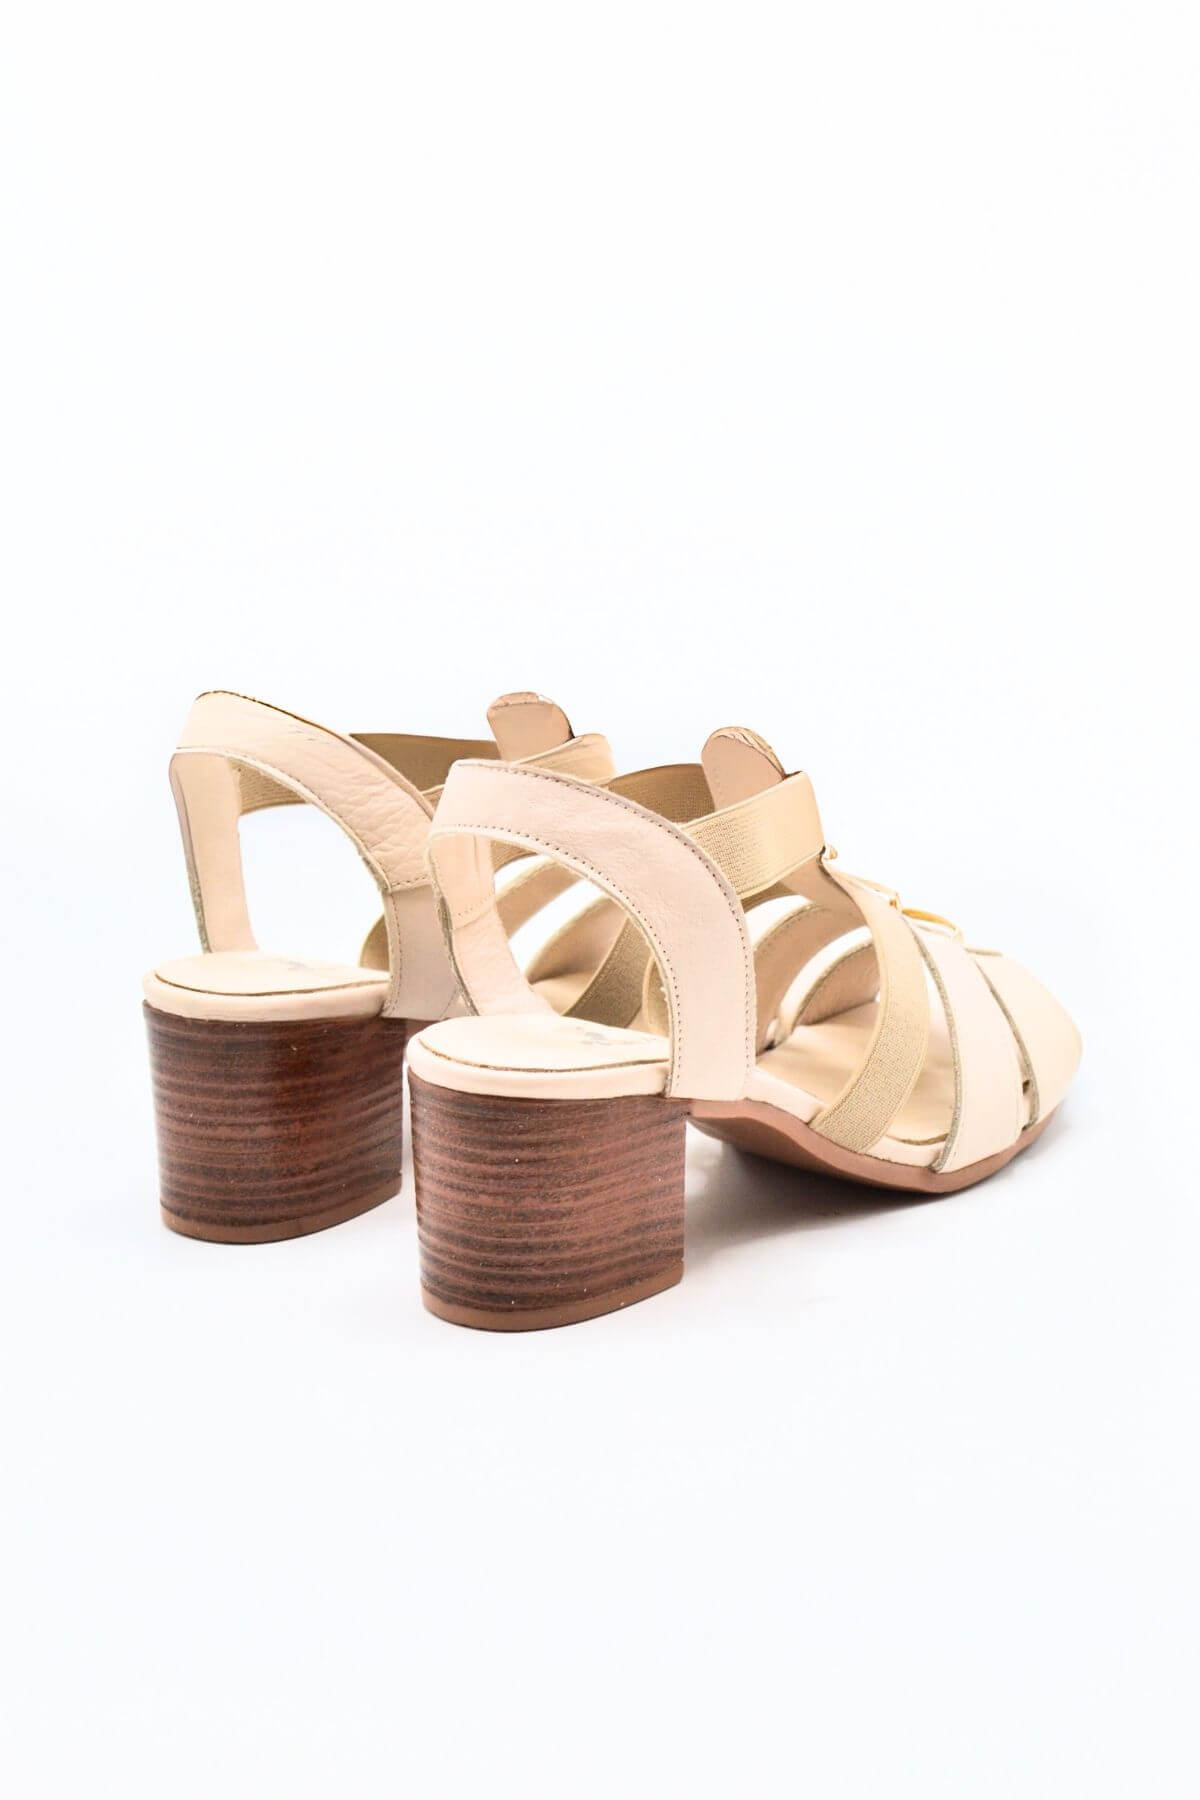 Kadın Yazlık Topuklu Deri Sandalet Bej 1857227Y - Thumbnail